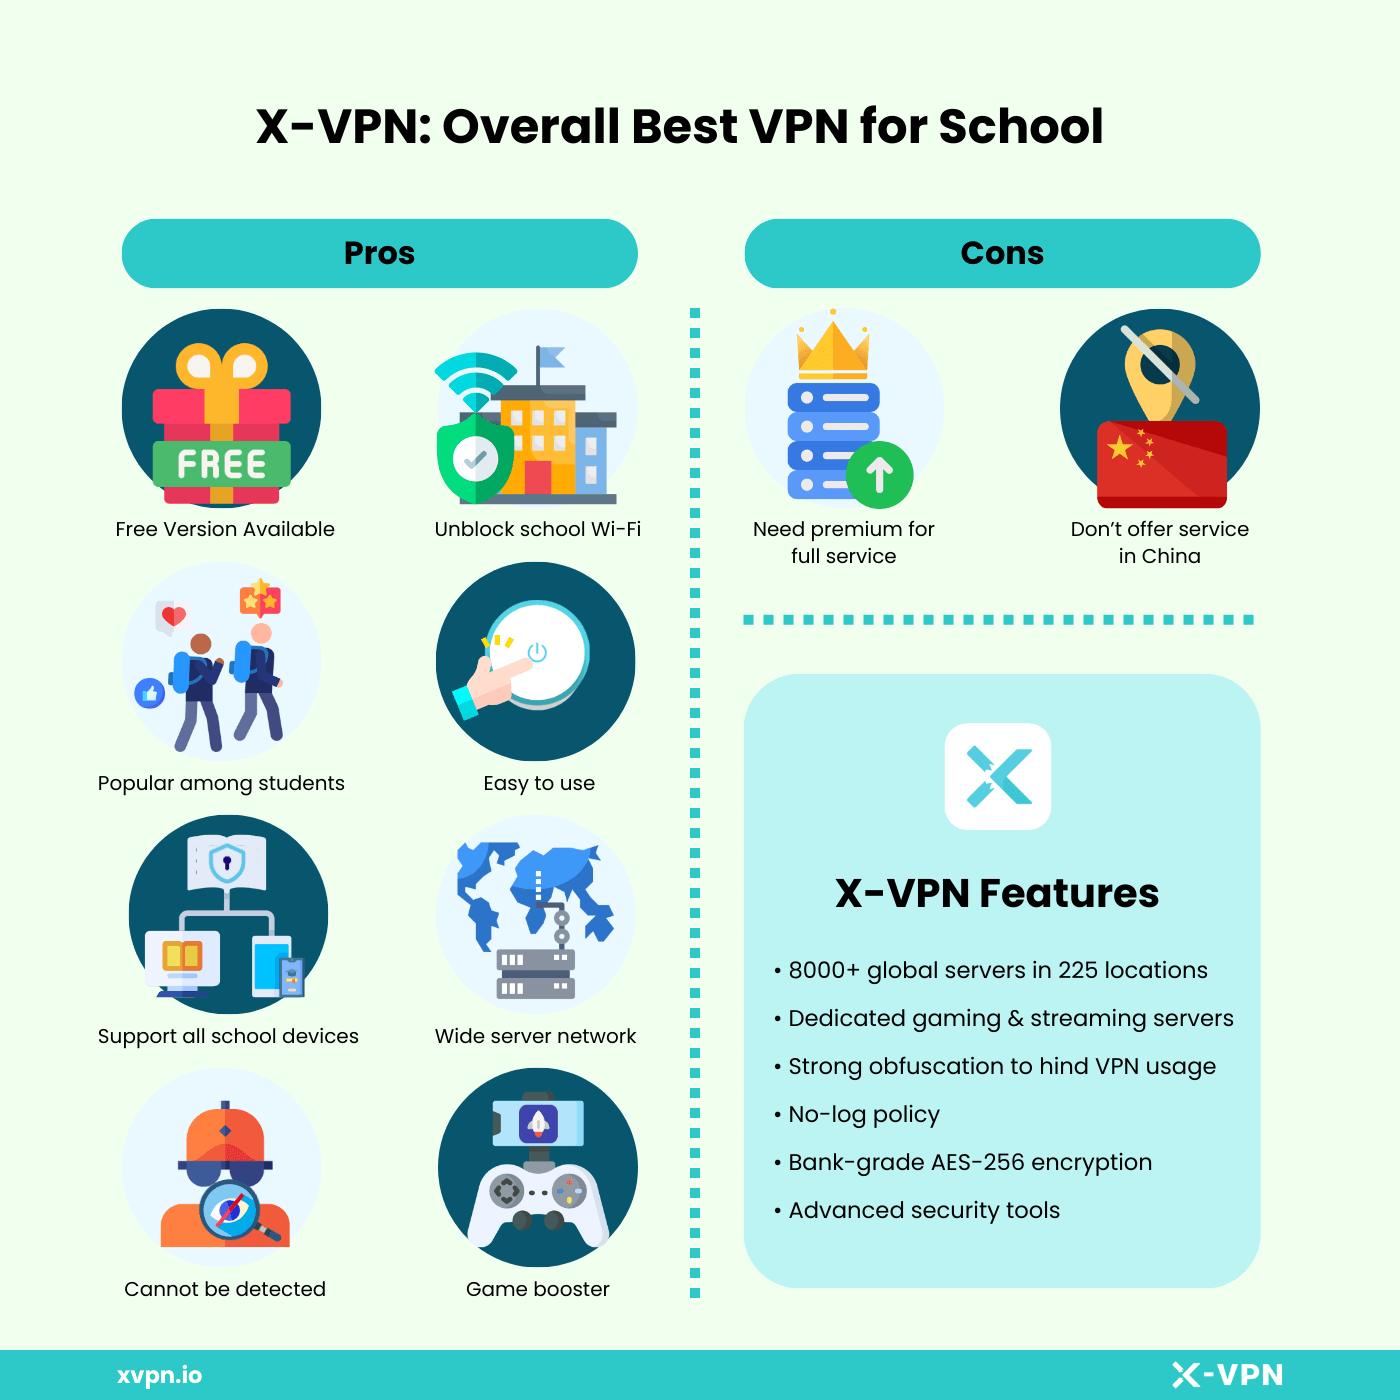 Best VPN for school